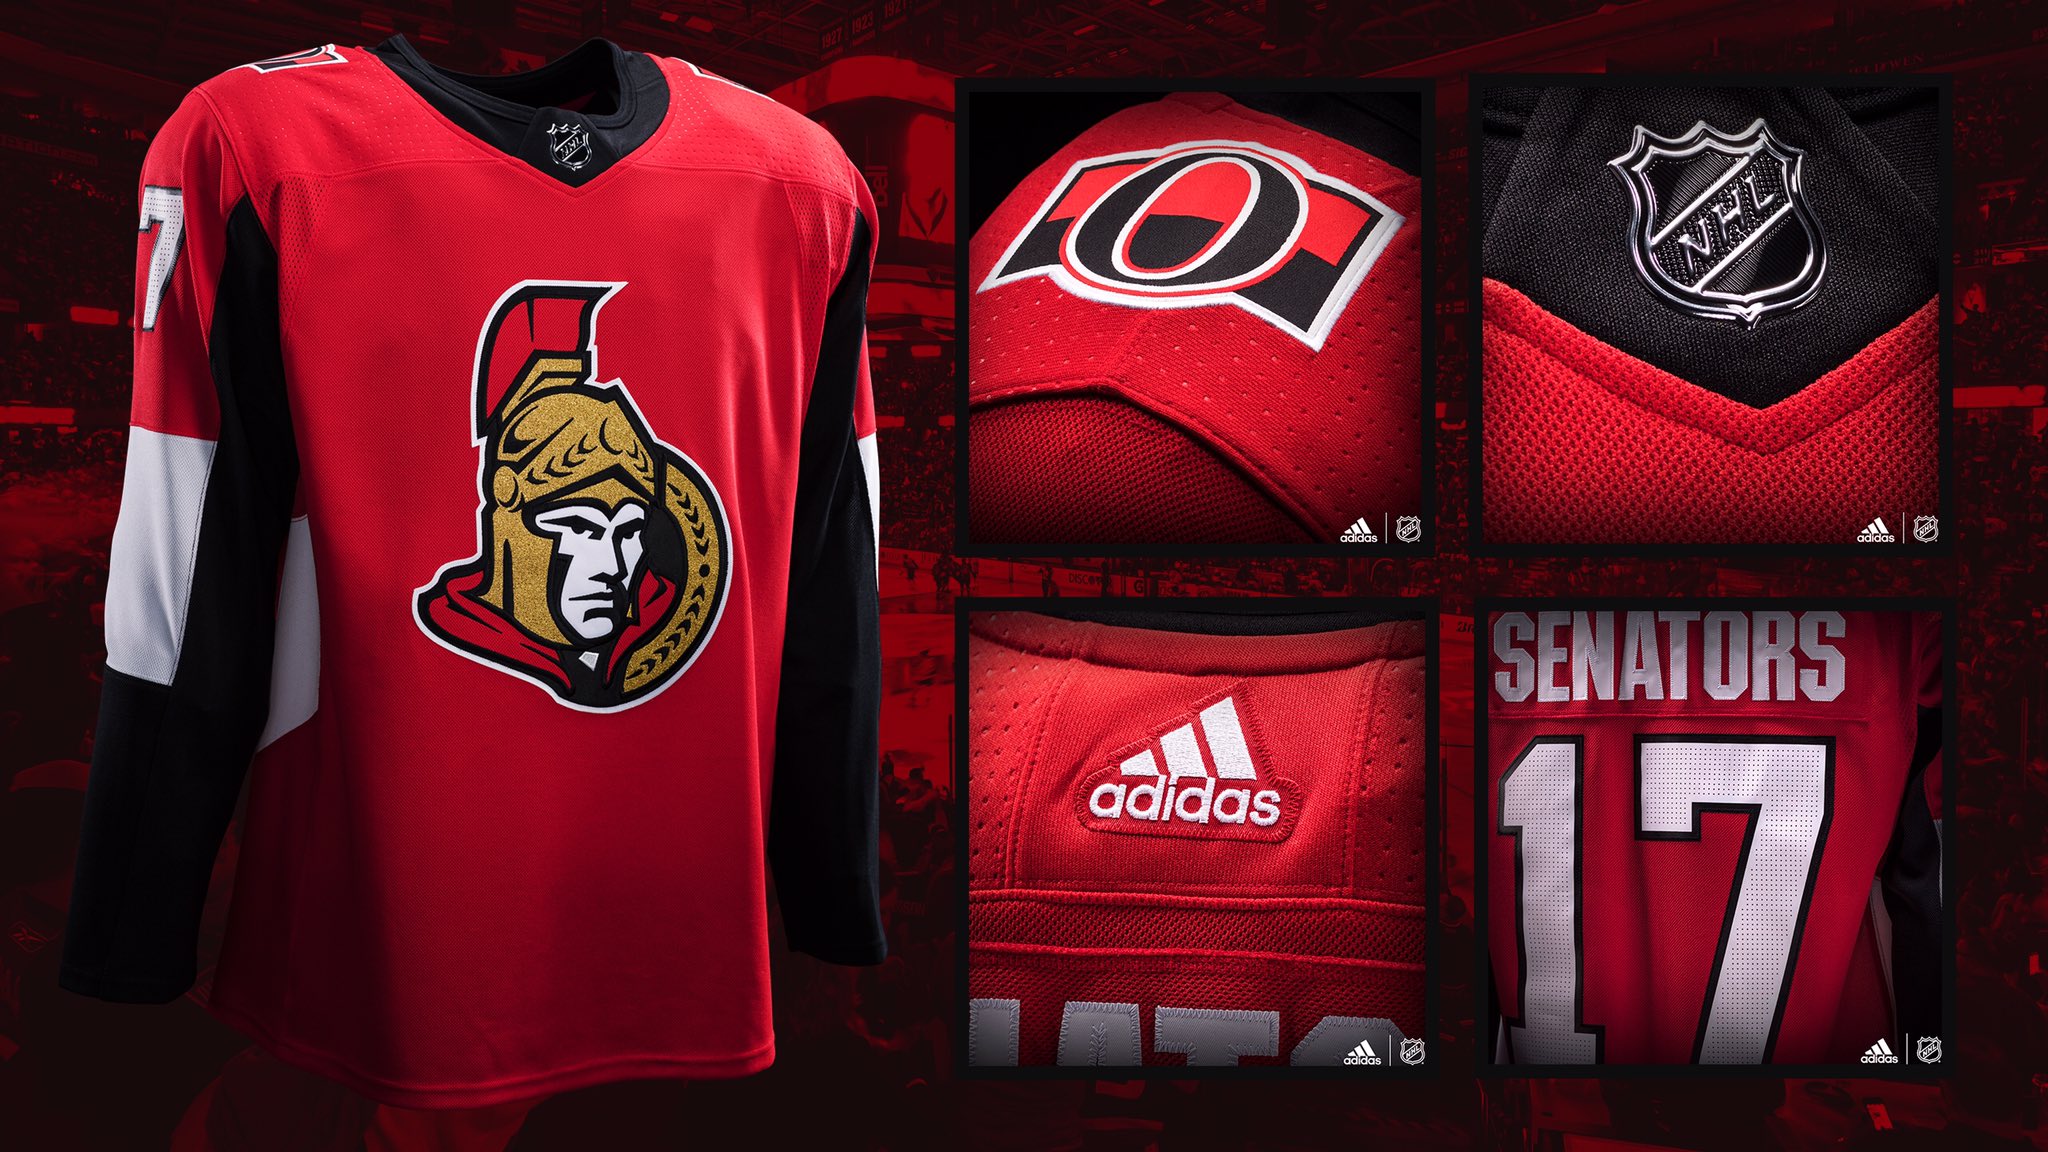 Ottawa Senators @adidashockey jerseys 